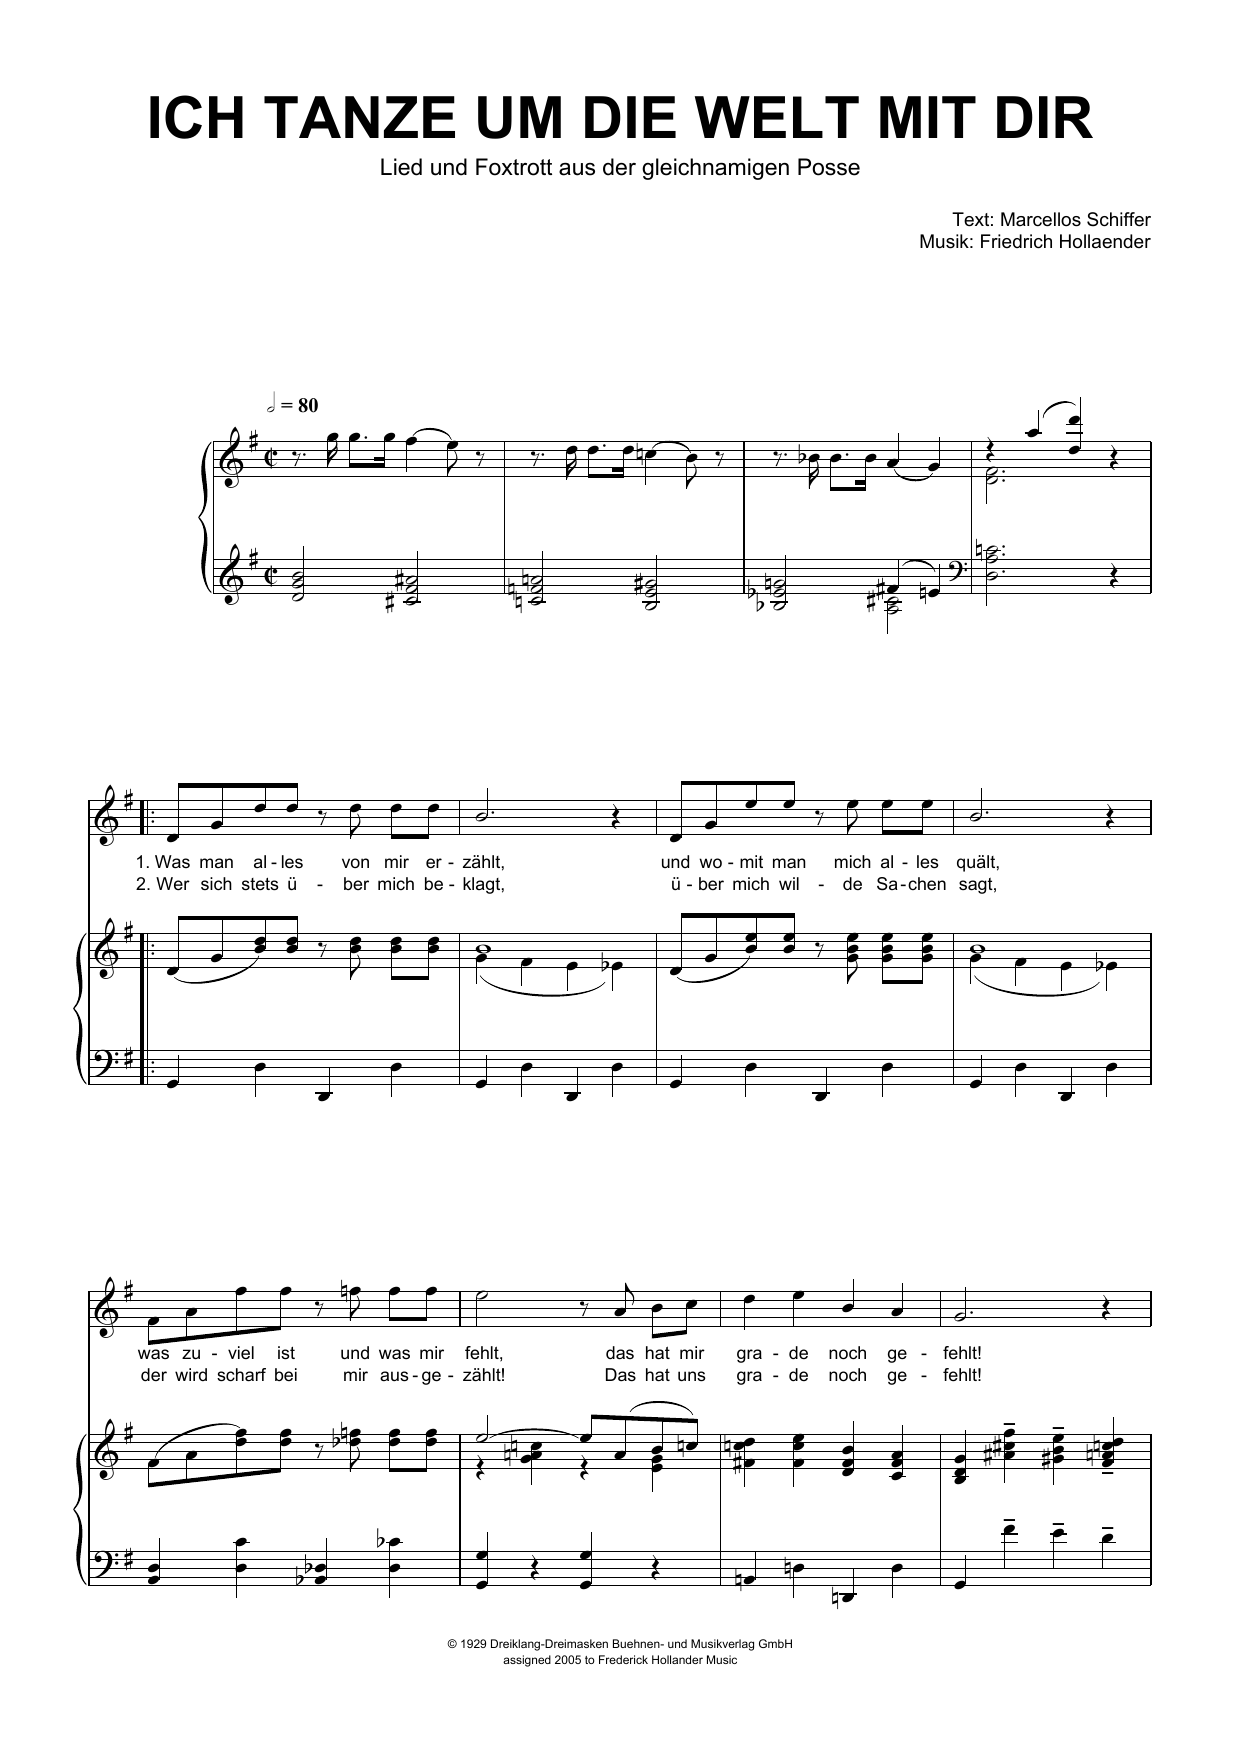 Friedrich Hollaender Ich Tanze Um Die Welt Mit Dir Sheet Music Notes & Chords for Piano & Vocal - Download or Print PDF